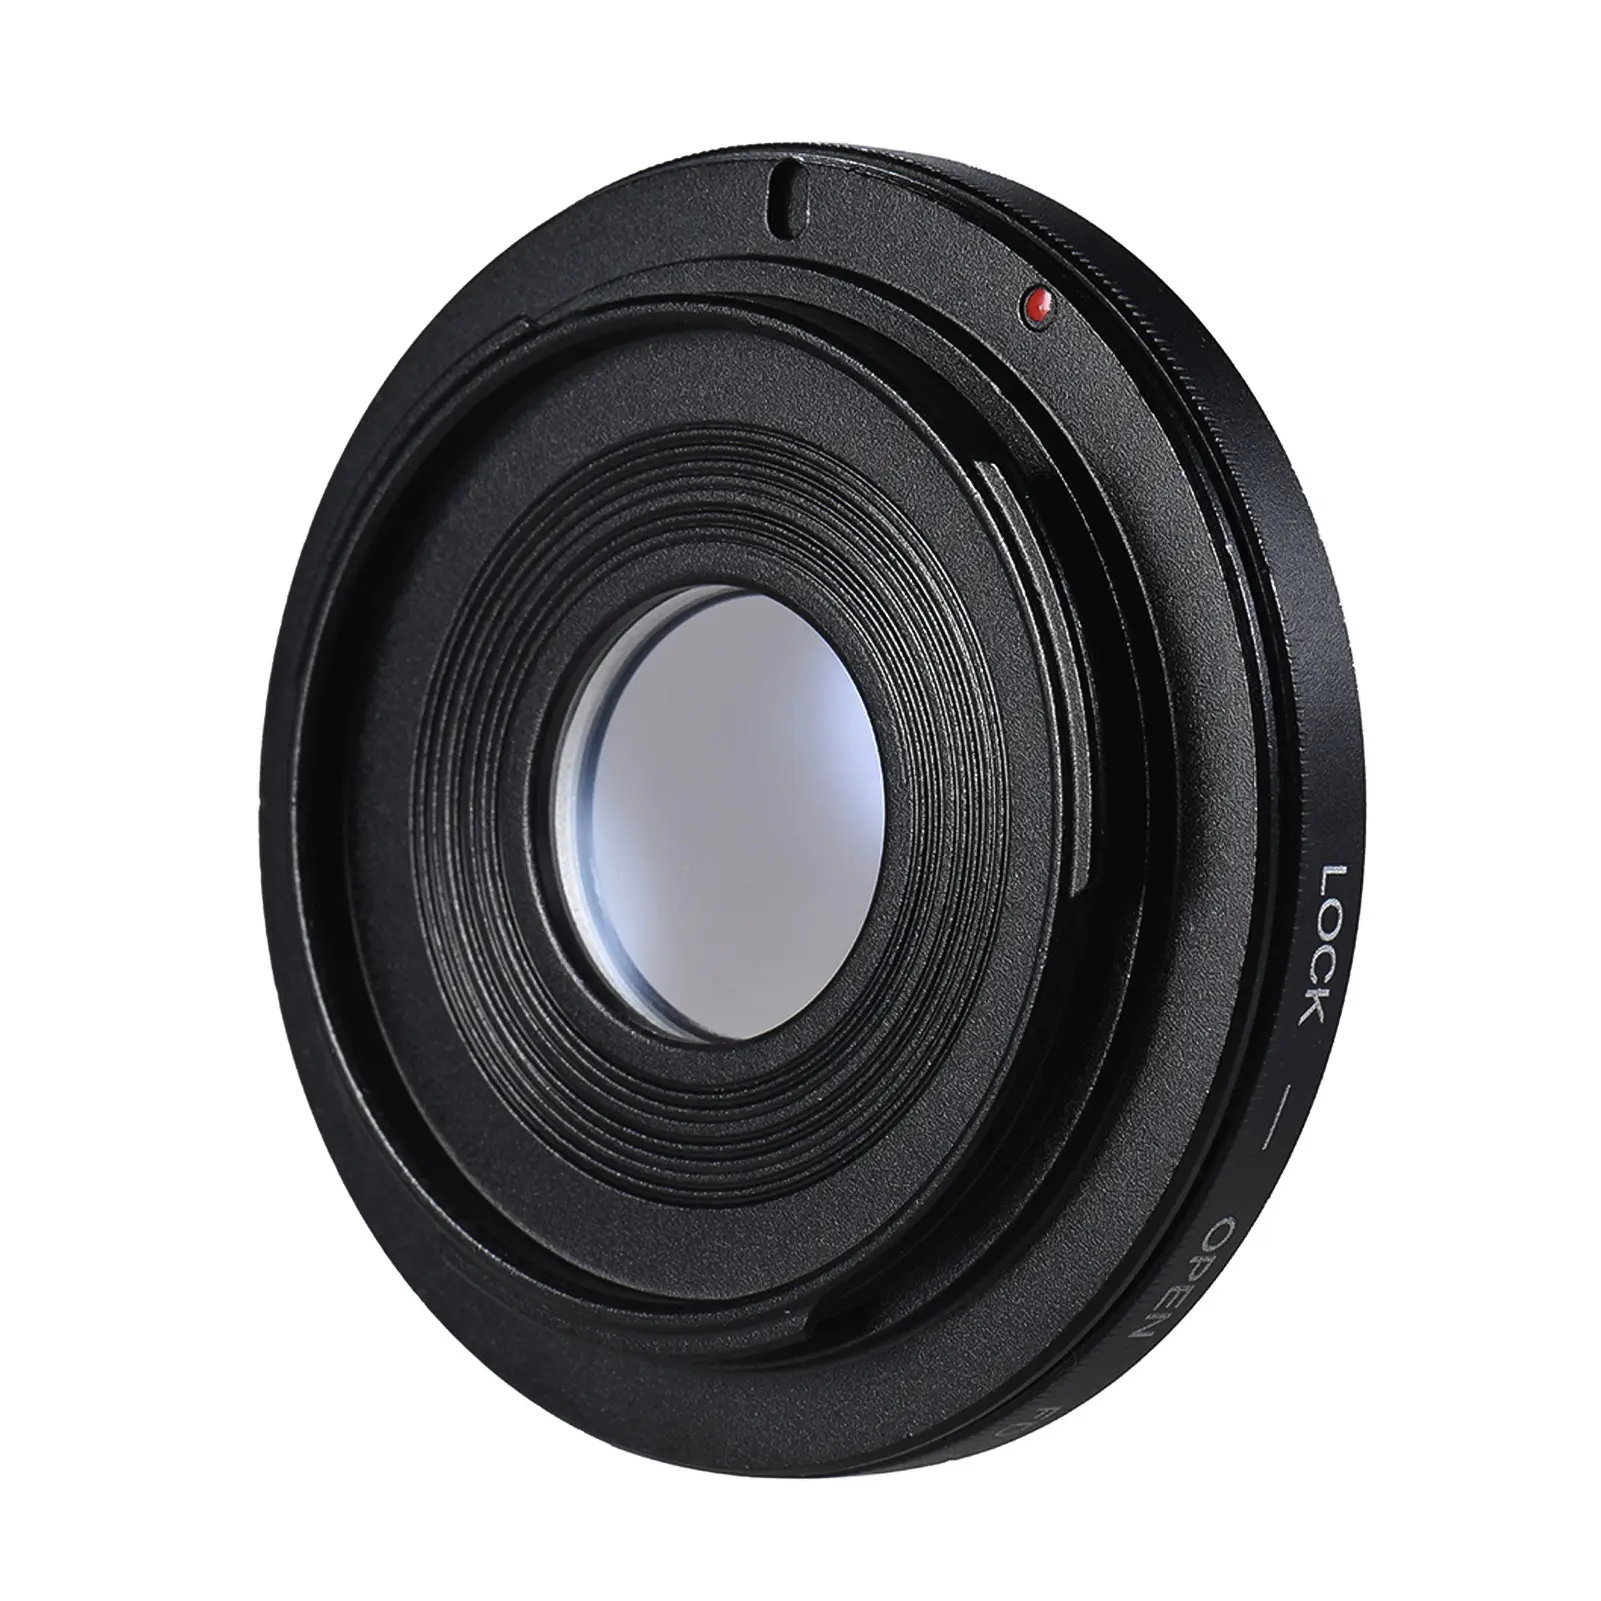 เลนส์เมาท์อะแดปเตอร์เลนส์กล้องอะแดปเตอร์แหวนกับเลนส์ออปติคอลโฟกัสอินฟินิตี้ FD เลนส์เพื่อ EOS EF Mount Body สำหรับ Canon FD-EOS